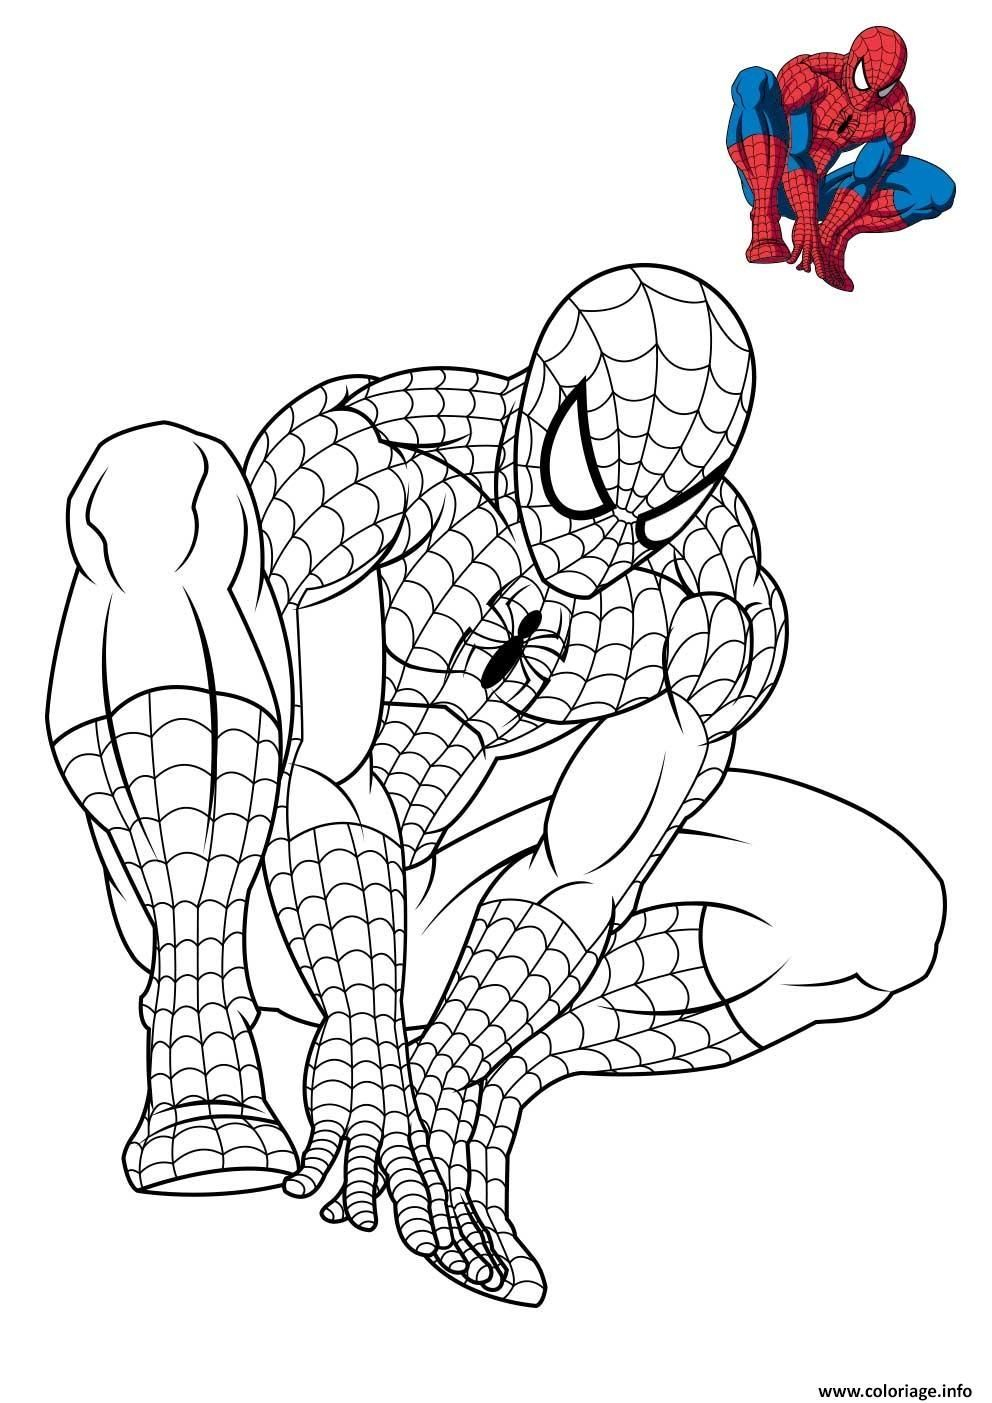 Coloriage Spiderman 3 En Reflexion Dessin Imprimer Spiderman Coloriage pour Dessins À Imprimer Spiderman